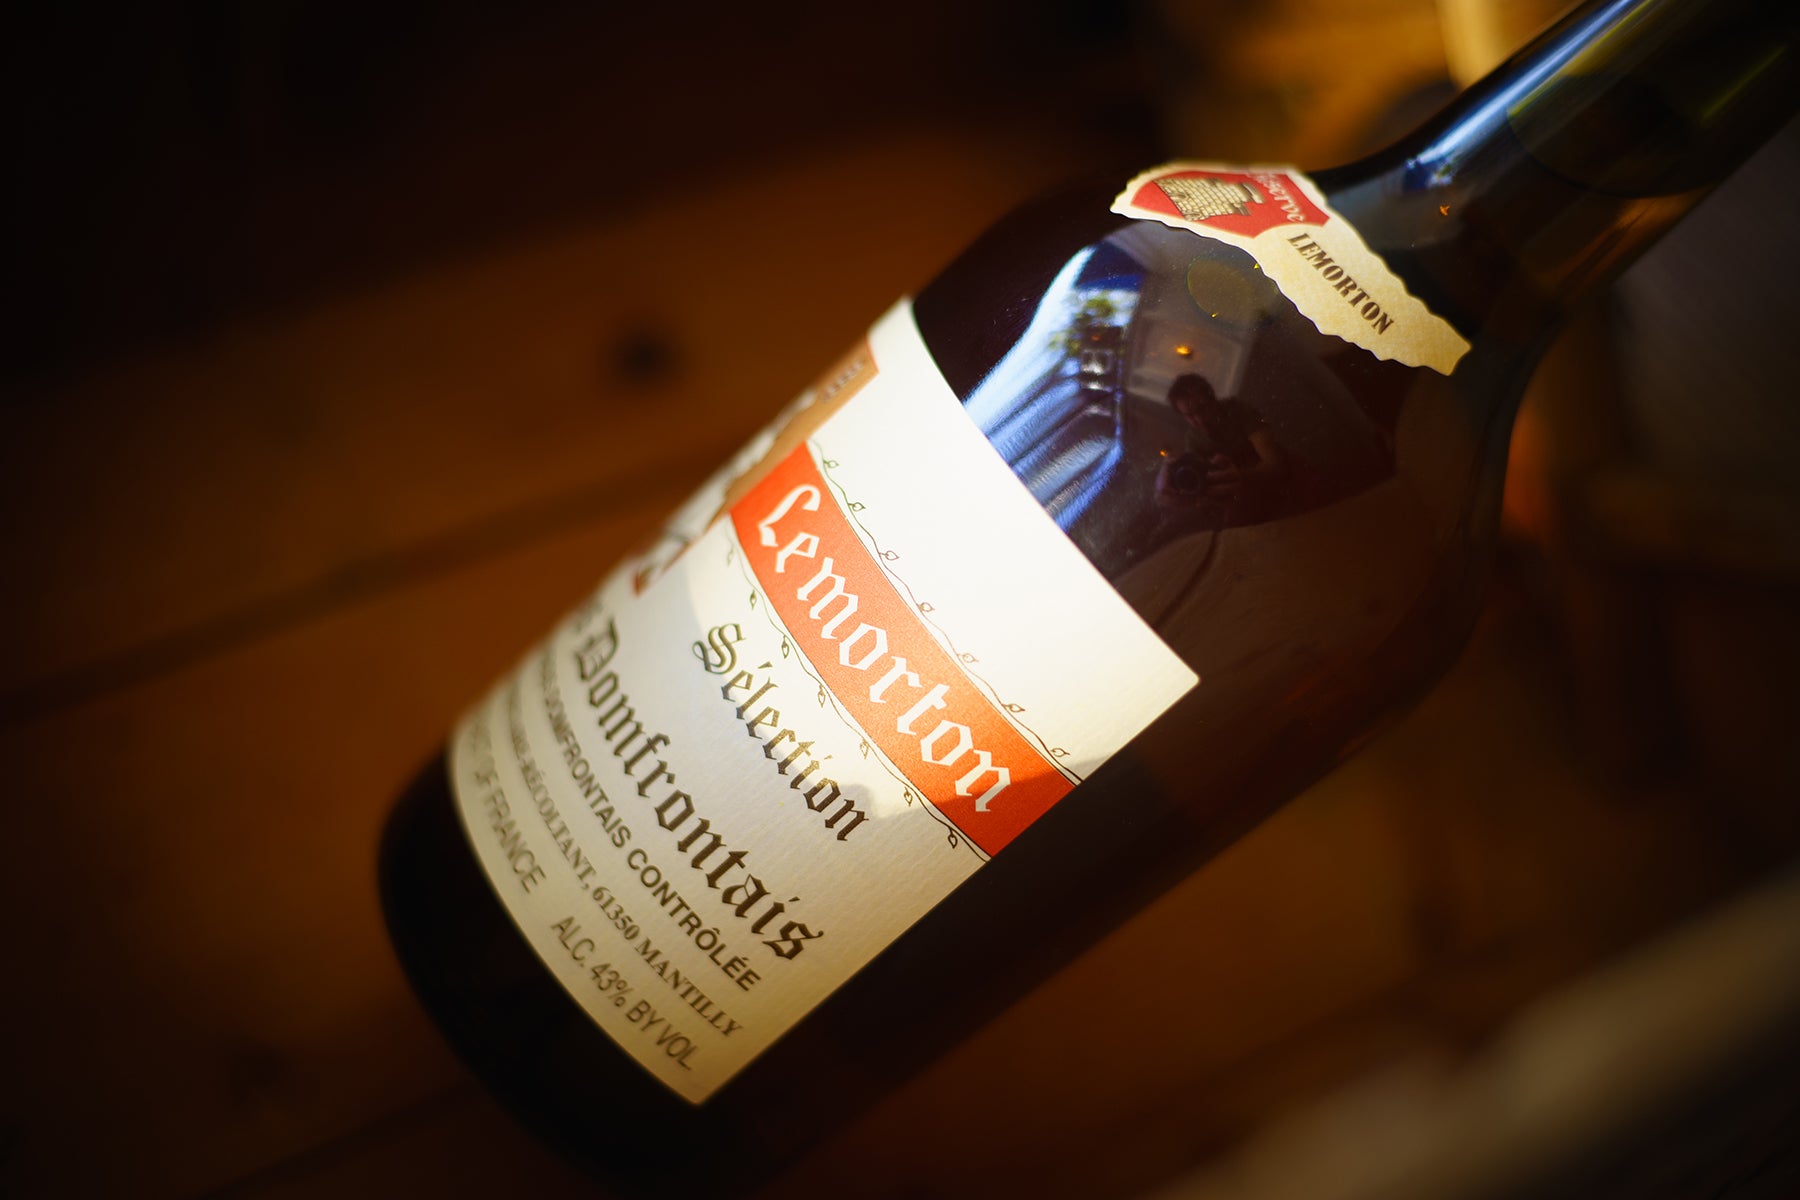 Lemorton Calvados and the Quest for an Honest Spirit